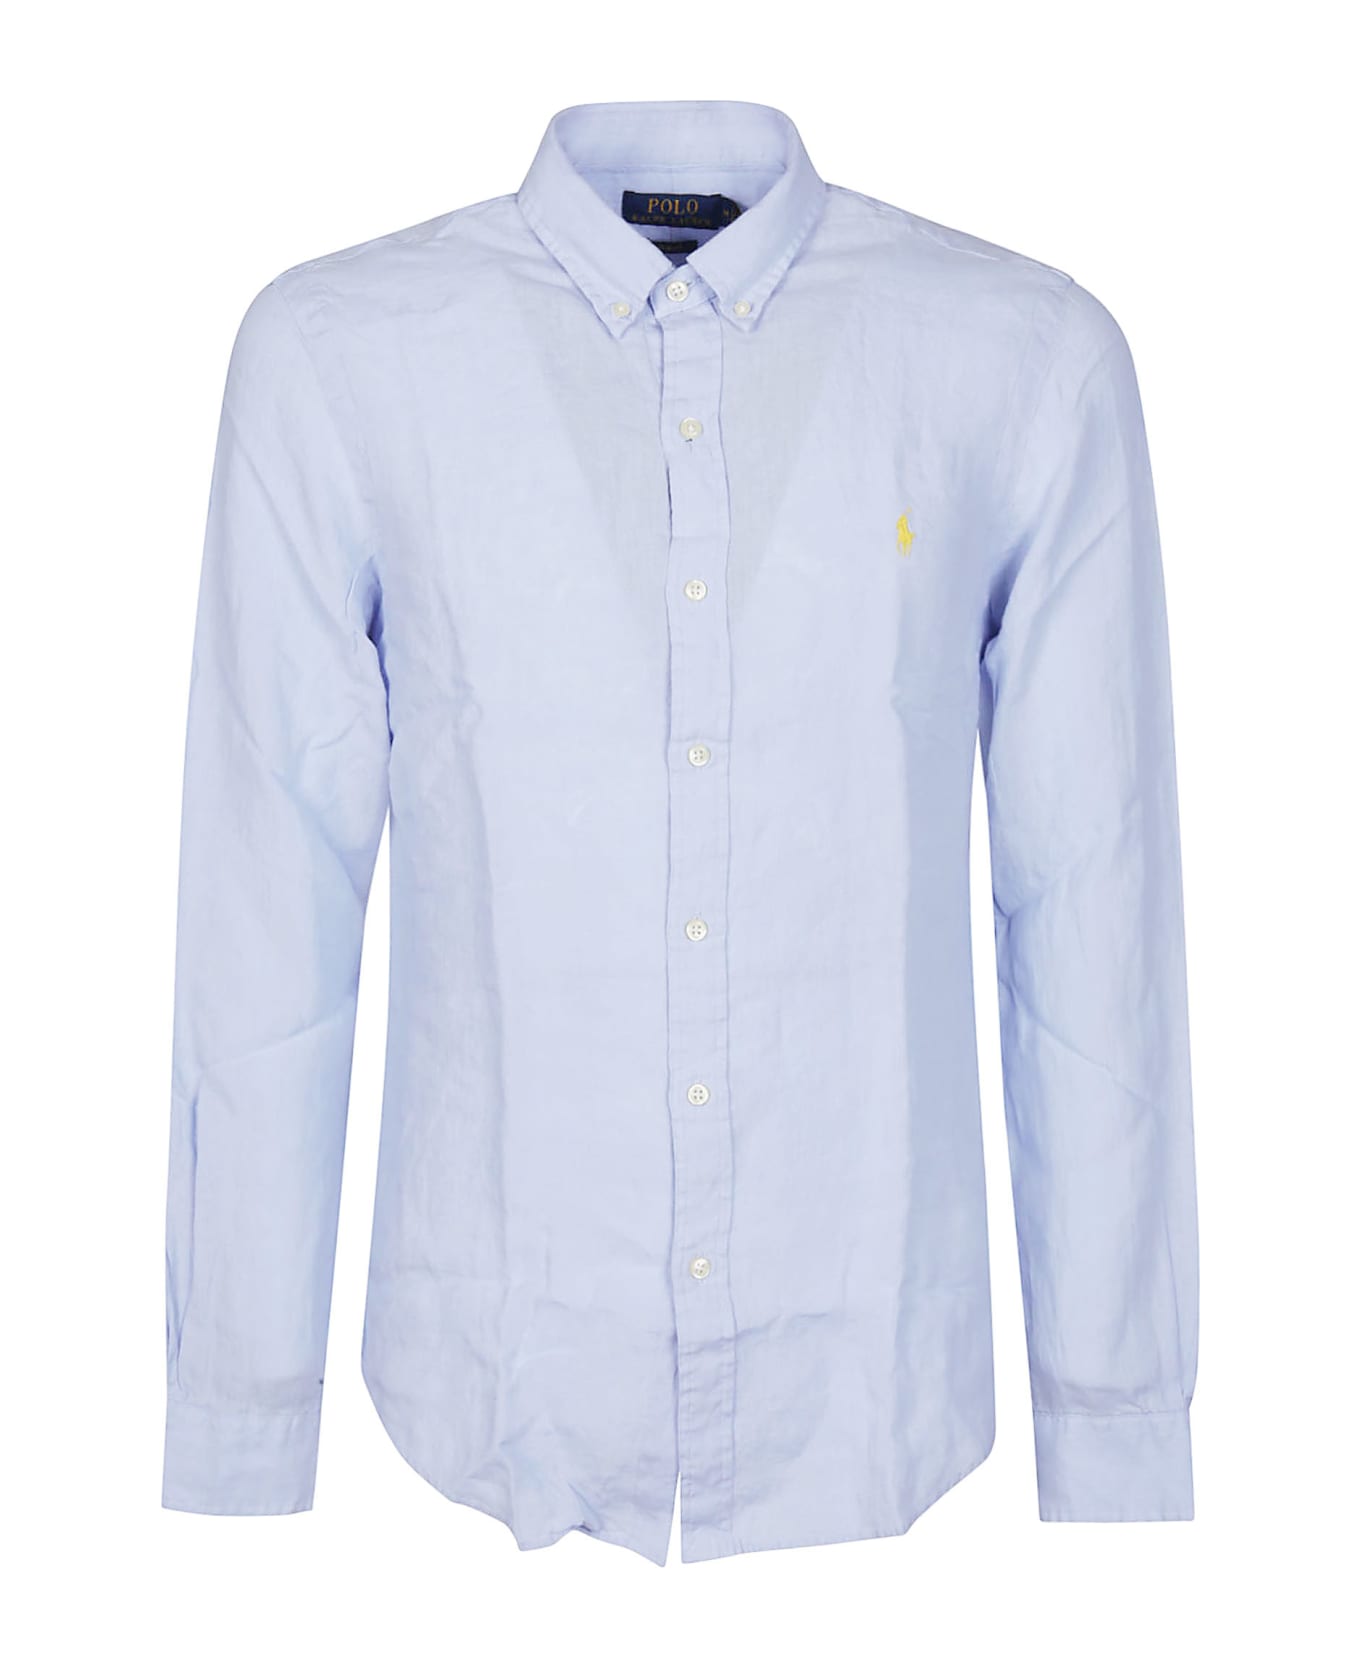 Ralph Lauren Long Sleeve Sport Shirt - BLUE HYACINTH シャツ